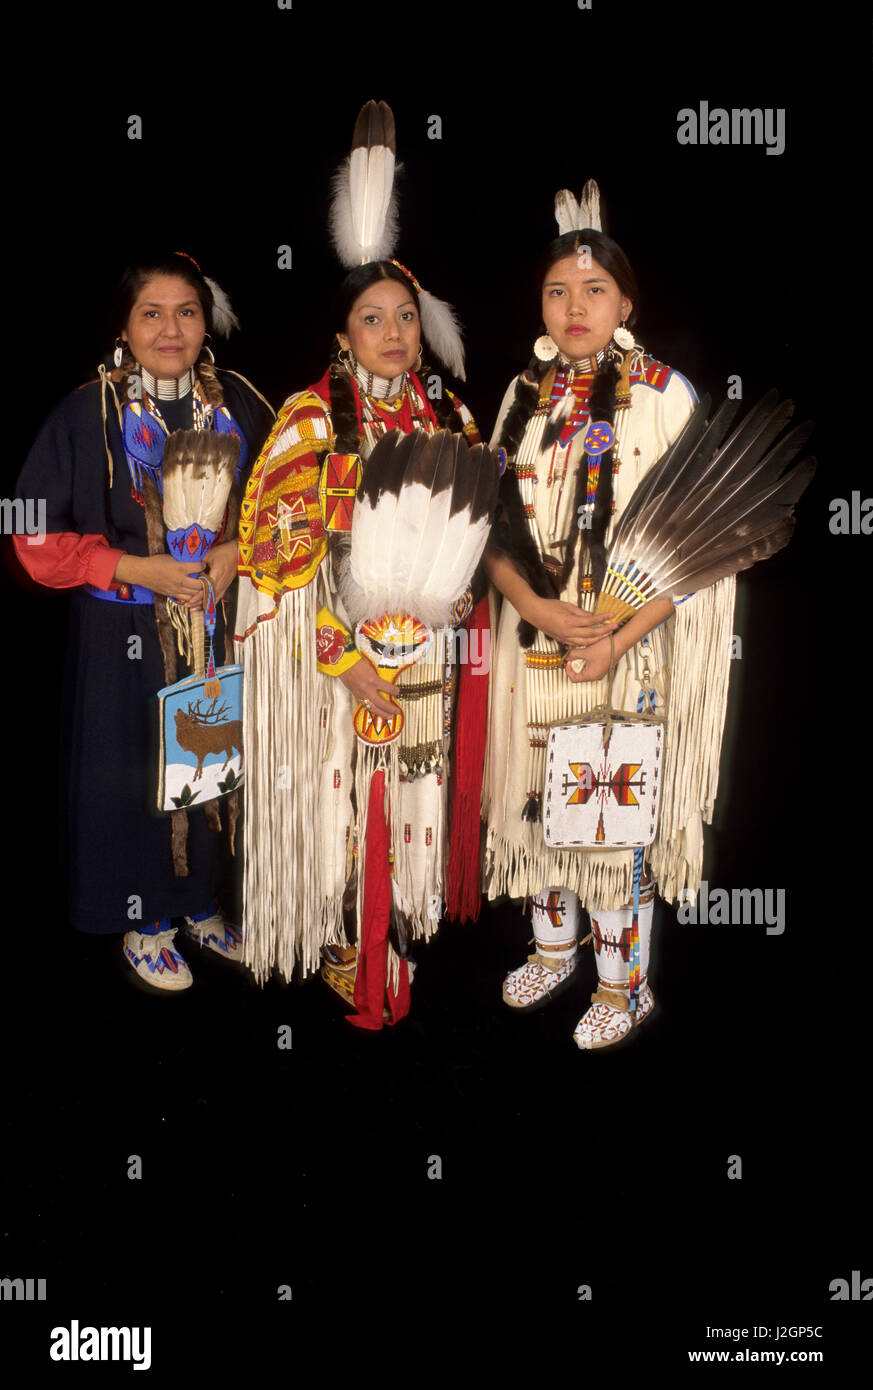 Native American famille de mère dans un tissu commercial robe fille adolescente qui est habillé en costume traditionnel et d'une femme qui est une soeur et ma tante. (MR) Banque D'Images